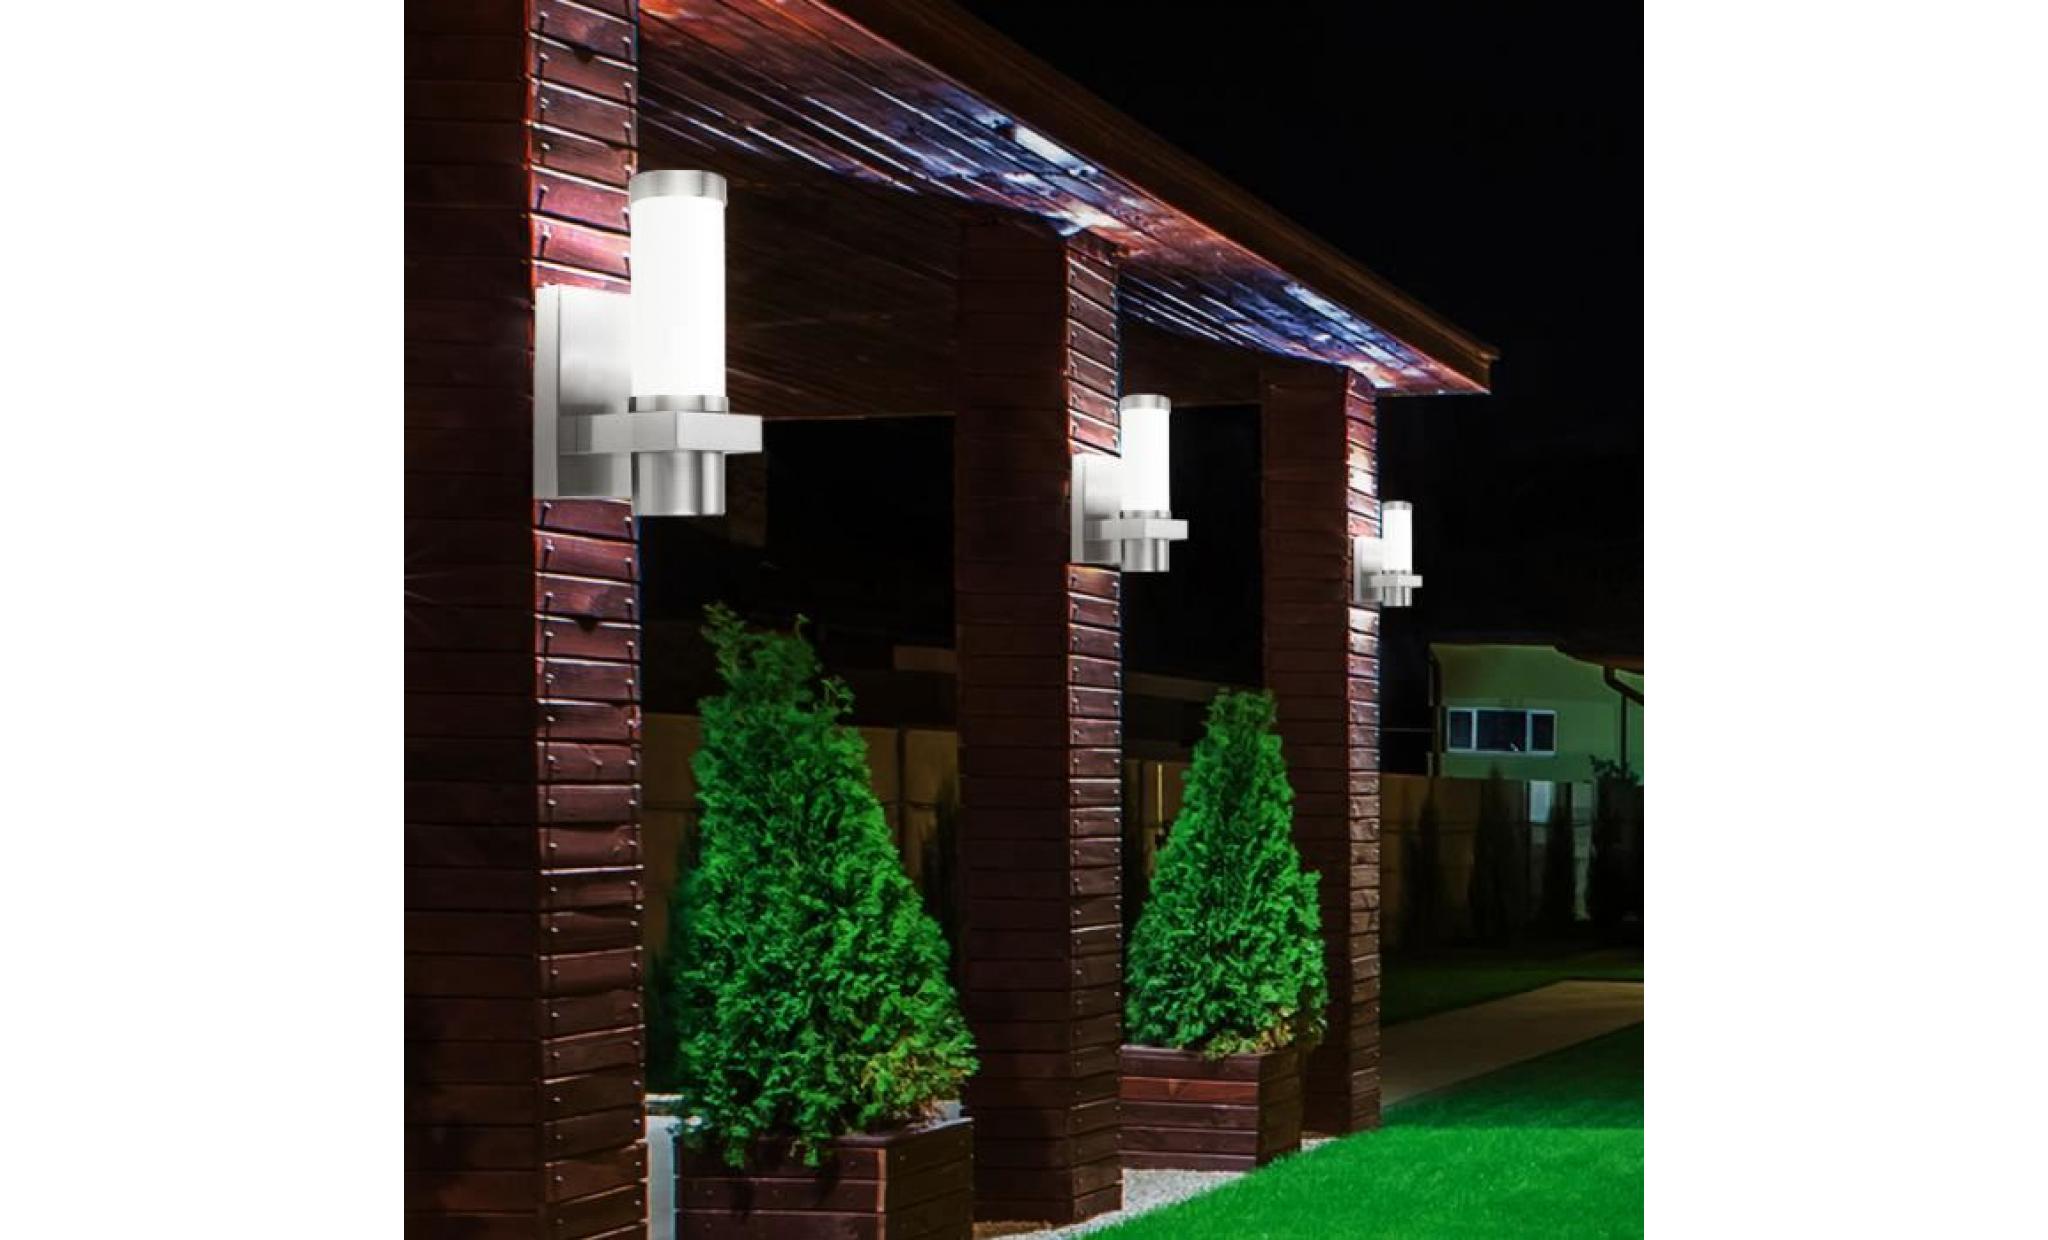 applique luminaire mural acier inoxydable verre satiné jardin terrasse éclairage ip44 pas cher